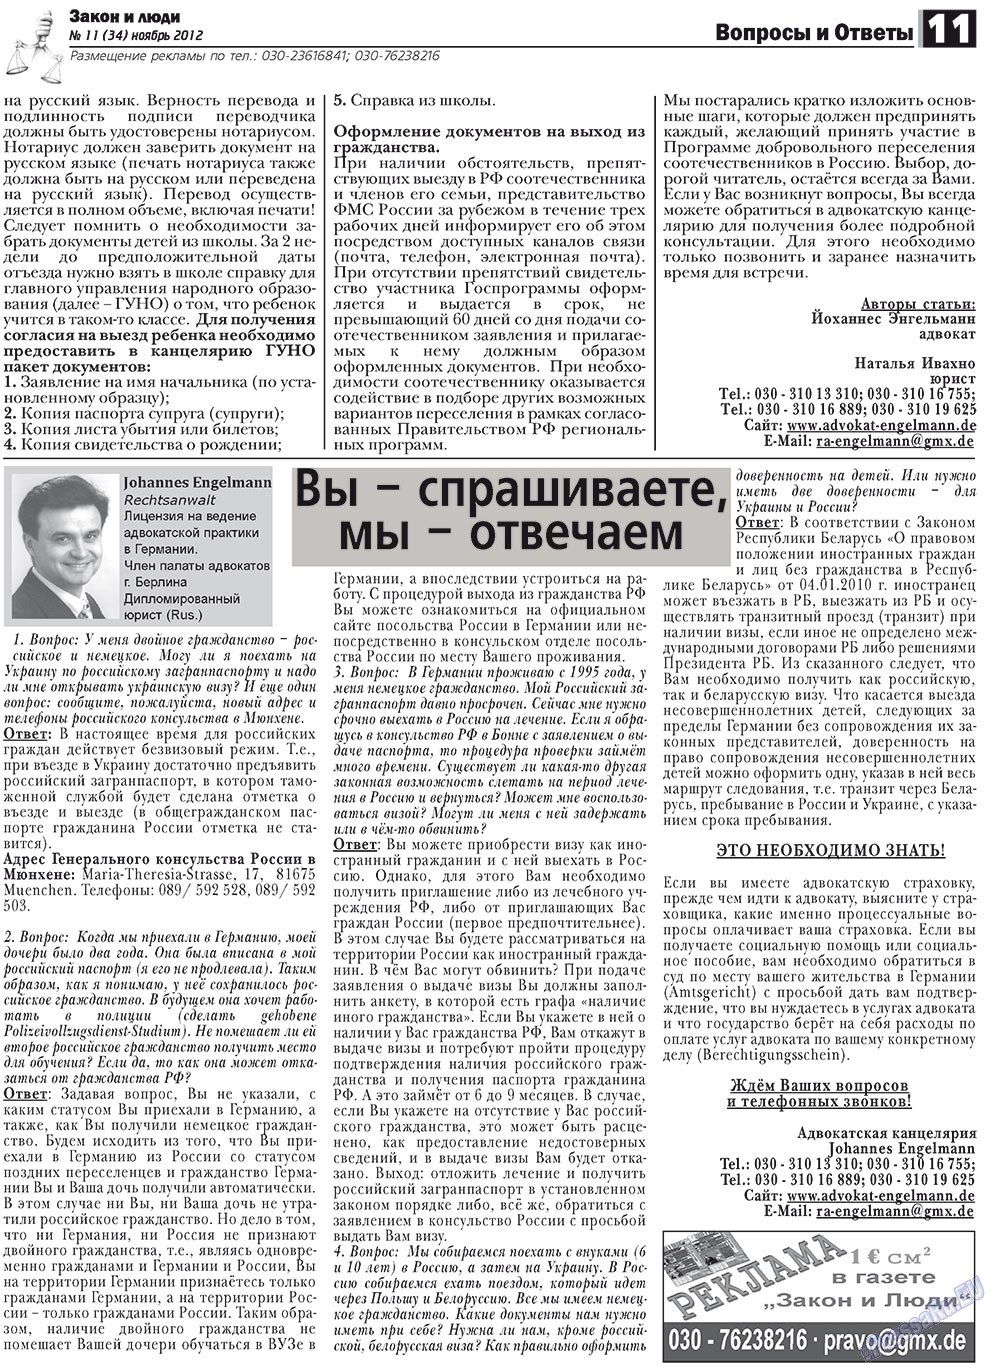 Закон и люди, газета. 2012 №11 стр.11